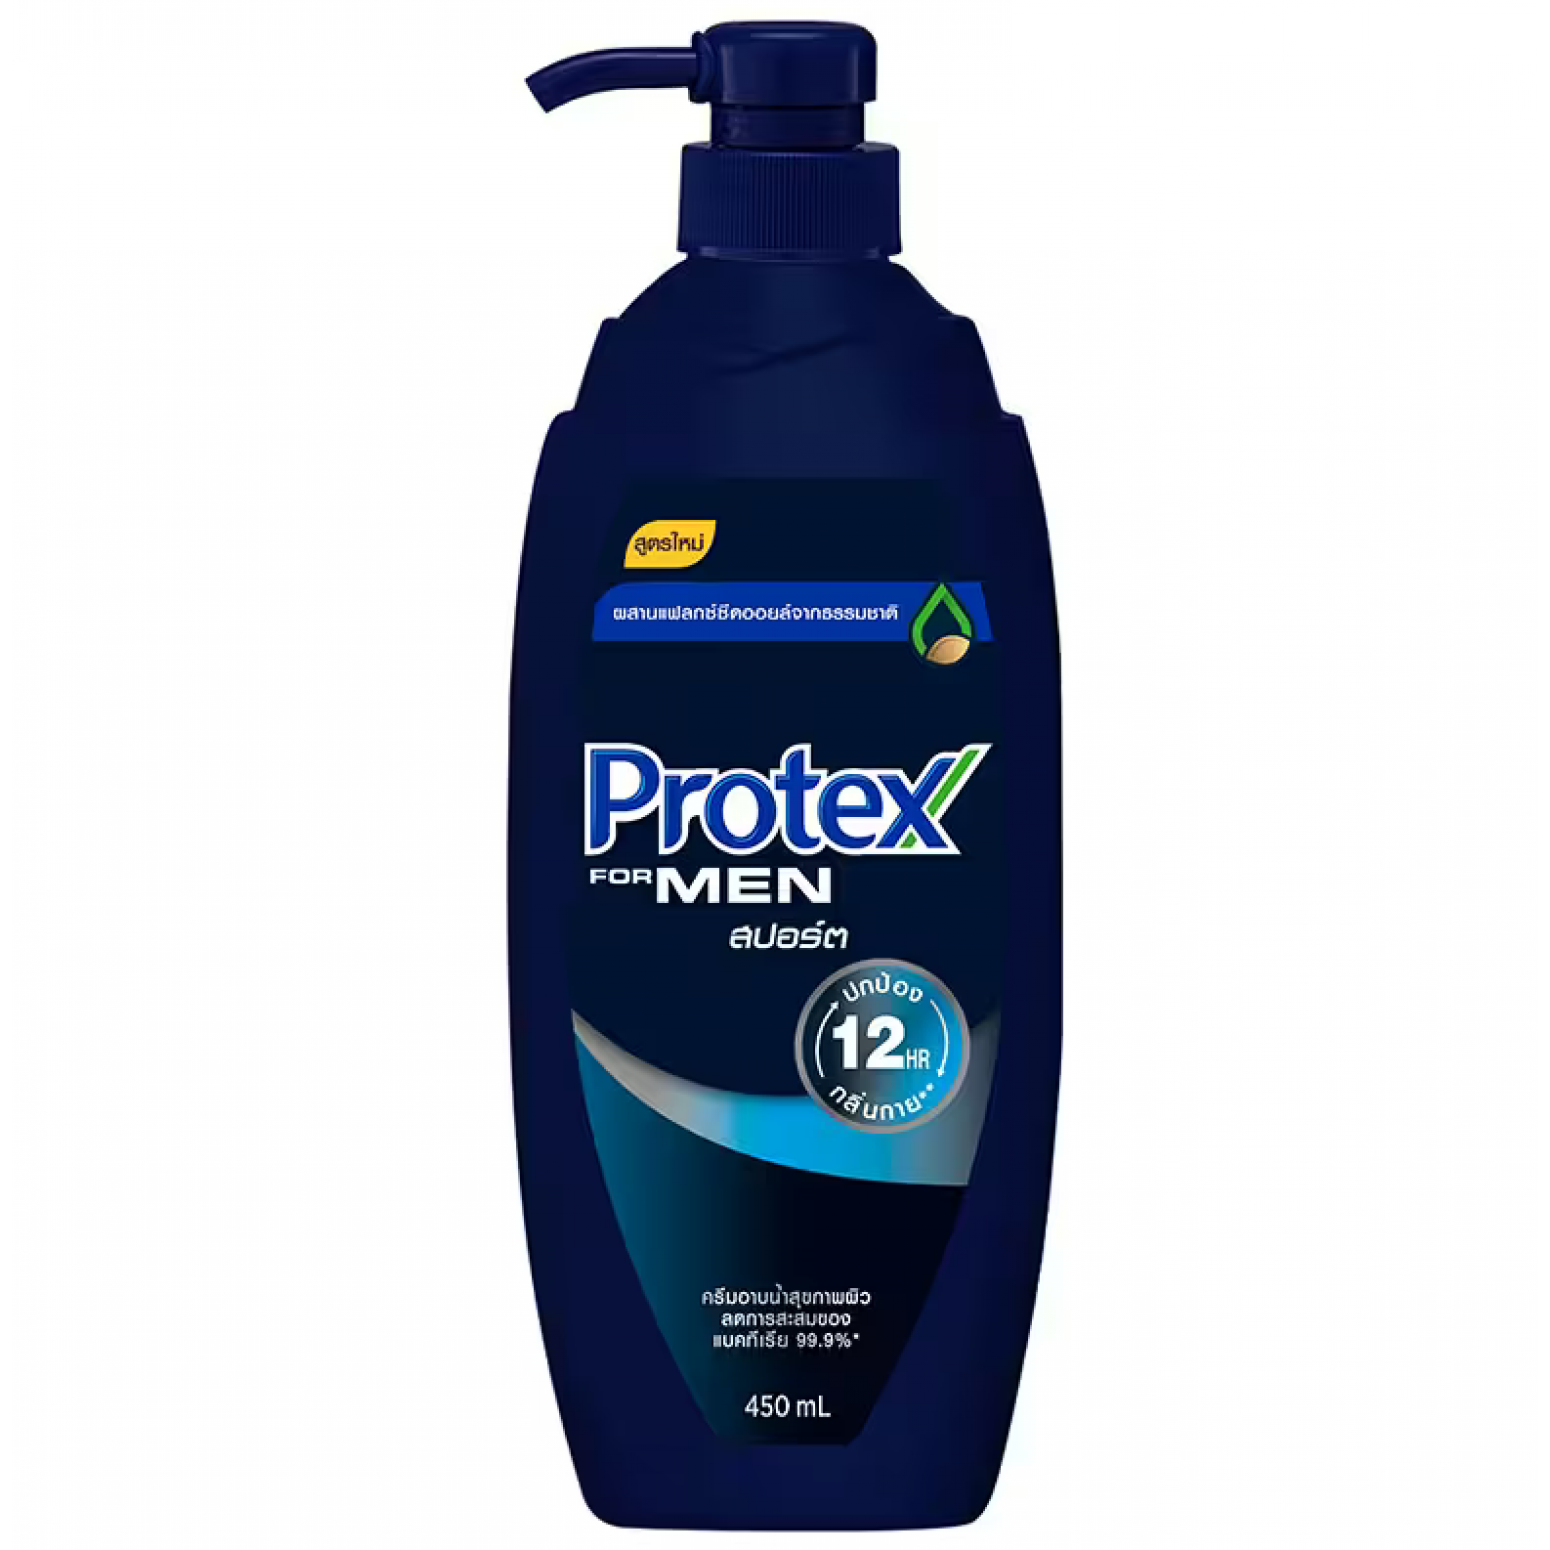 Protex Sport for Men Liquid Soap 450ml.